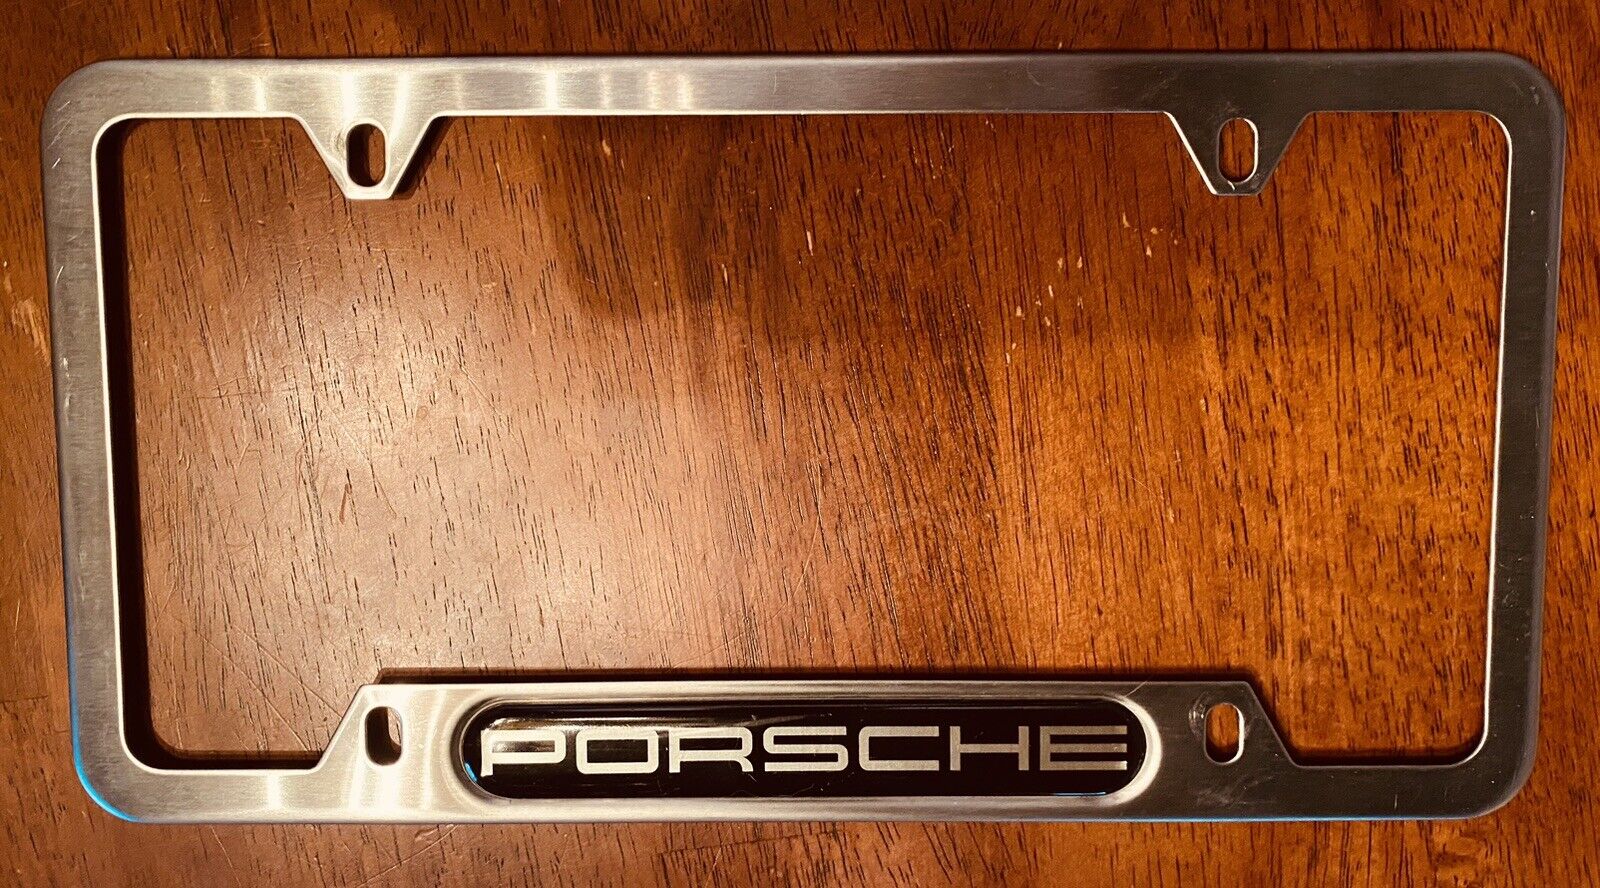 Genuine Porsche License Plate Frame - Stainless steel